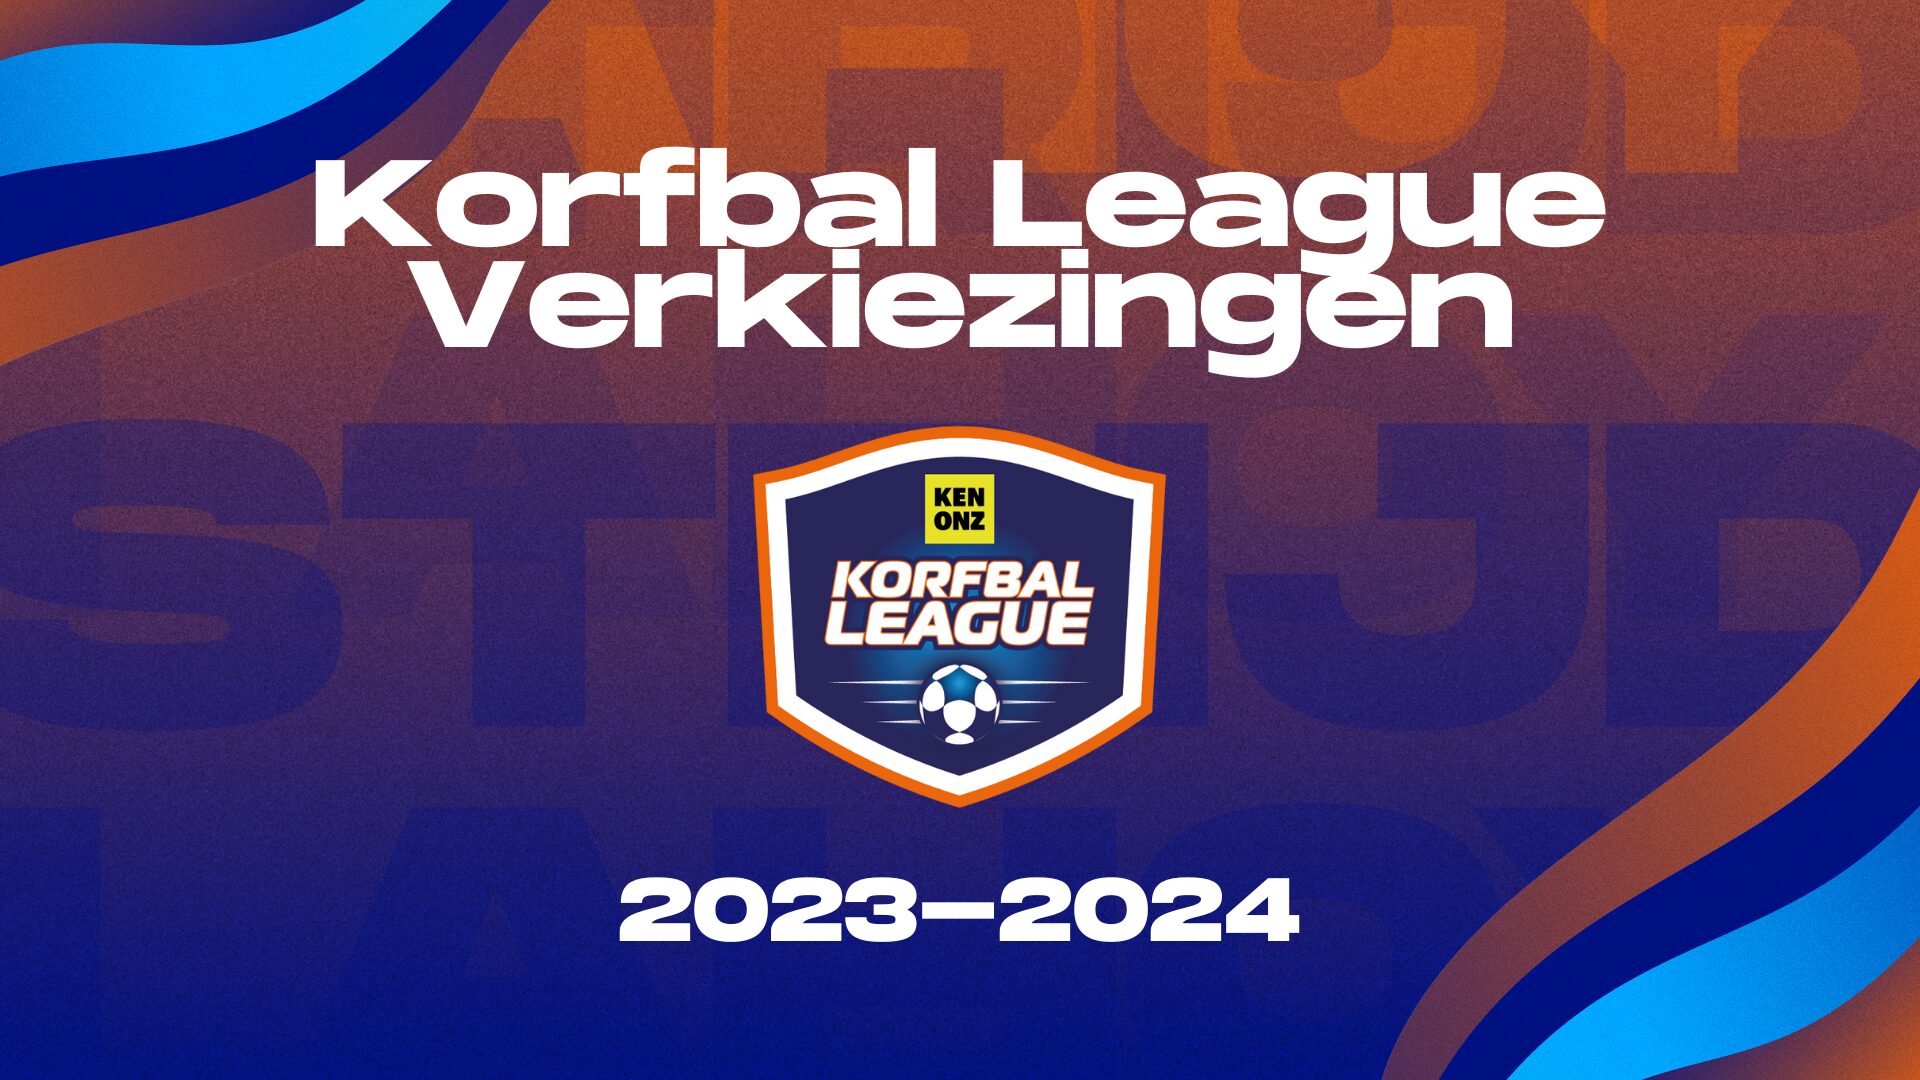 Korfbal Leagueverkiezingen 2023/2024